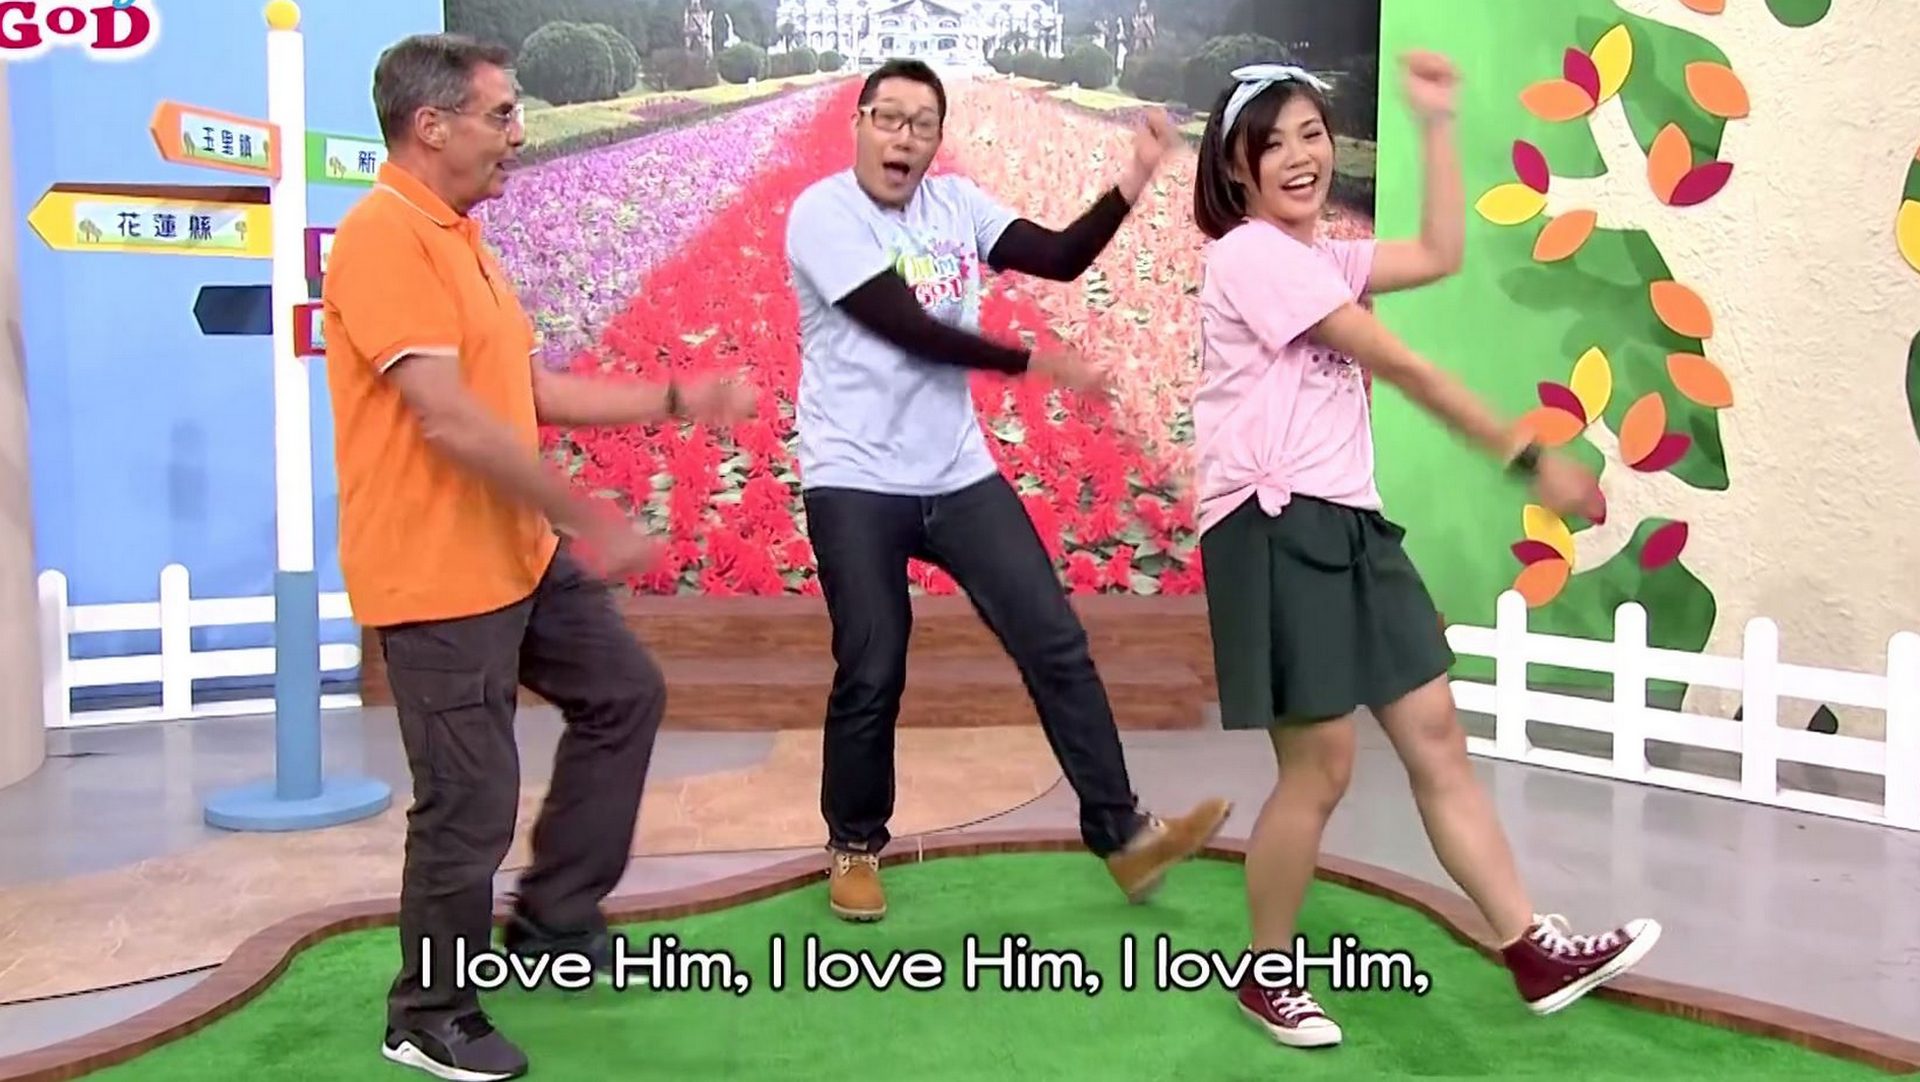 La série TV chinoise "Oh my God" veut faire connaître le pape et l'Eglise en Asie (capture d'écran) 